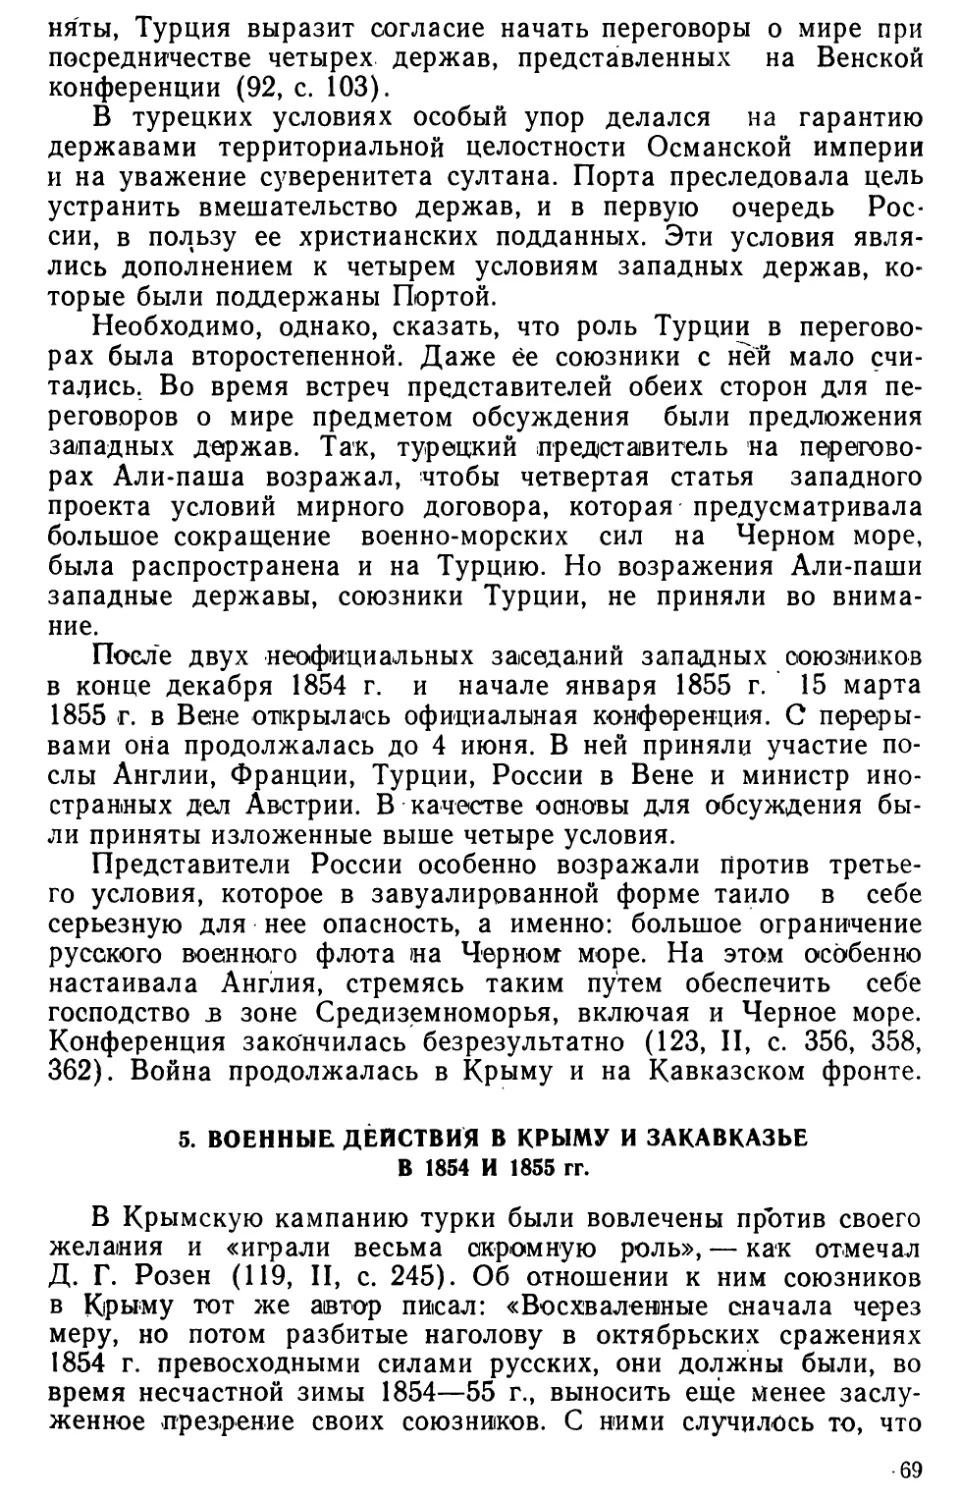 5. Военные действия в Крыму и Закавказье в 1854 и 1855 гг.